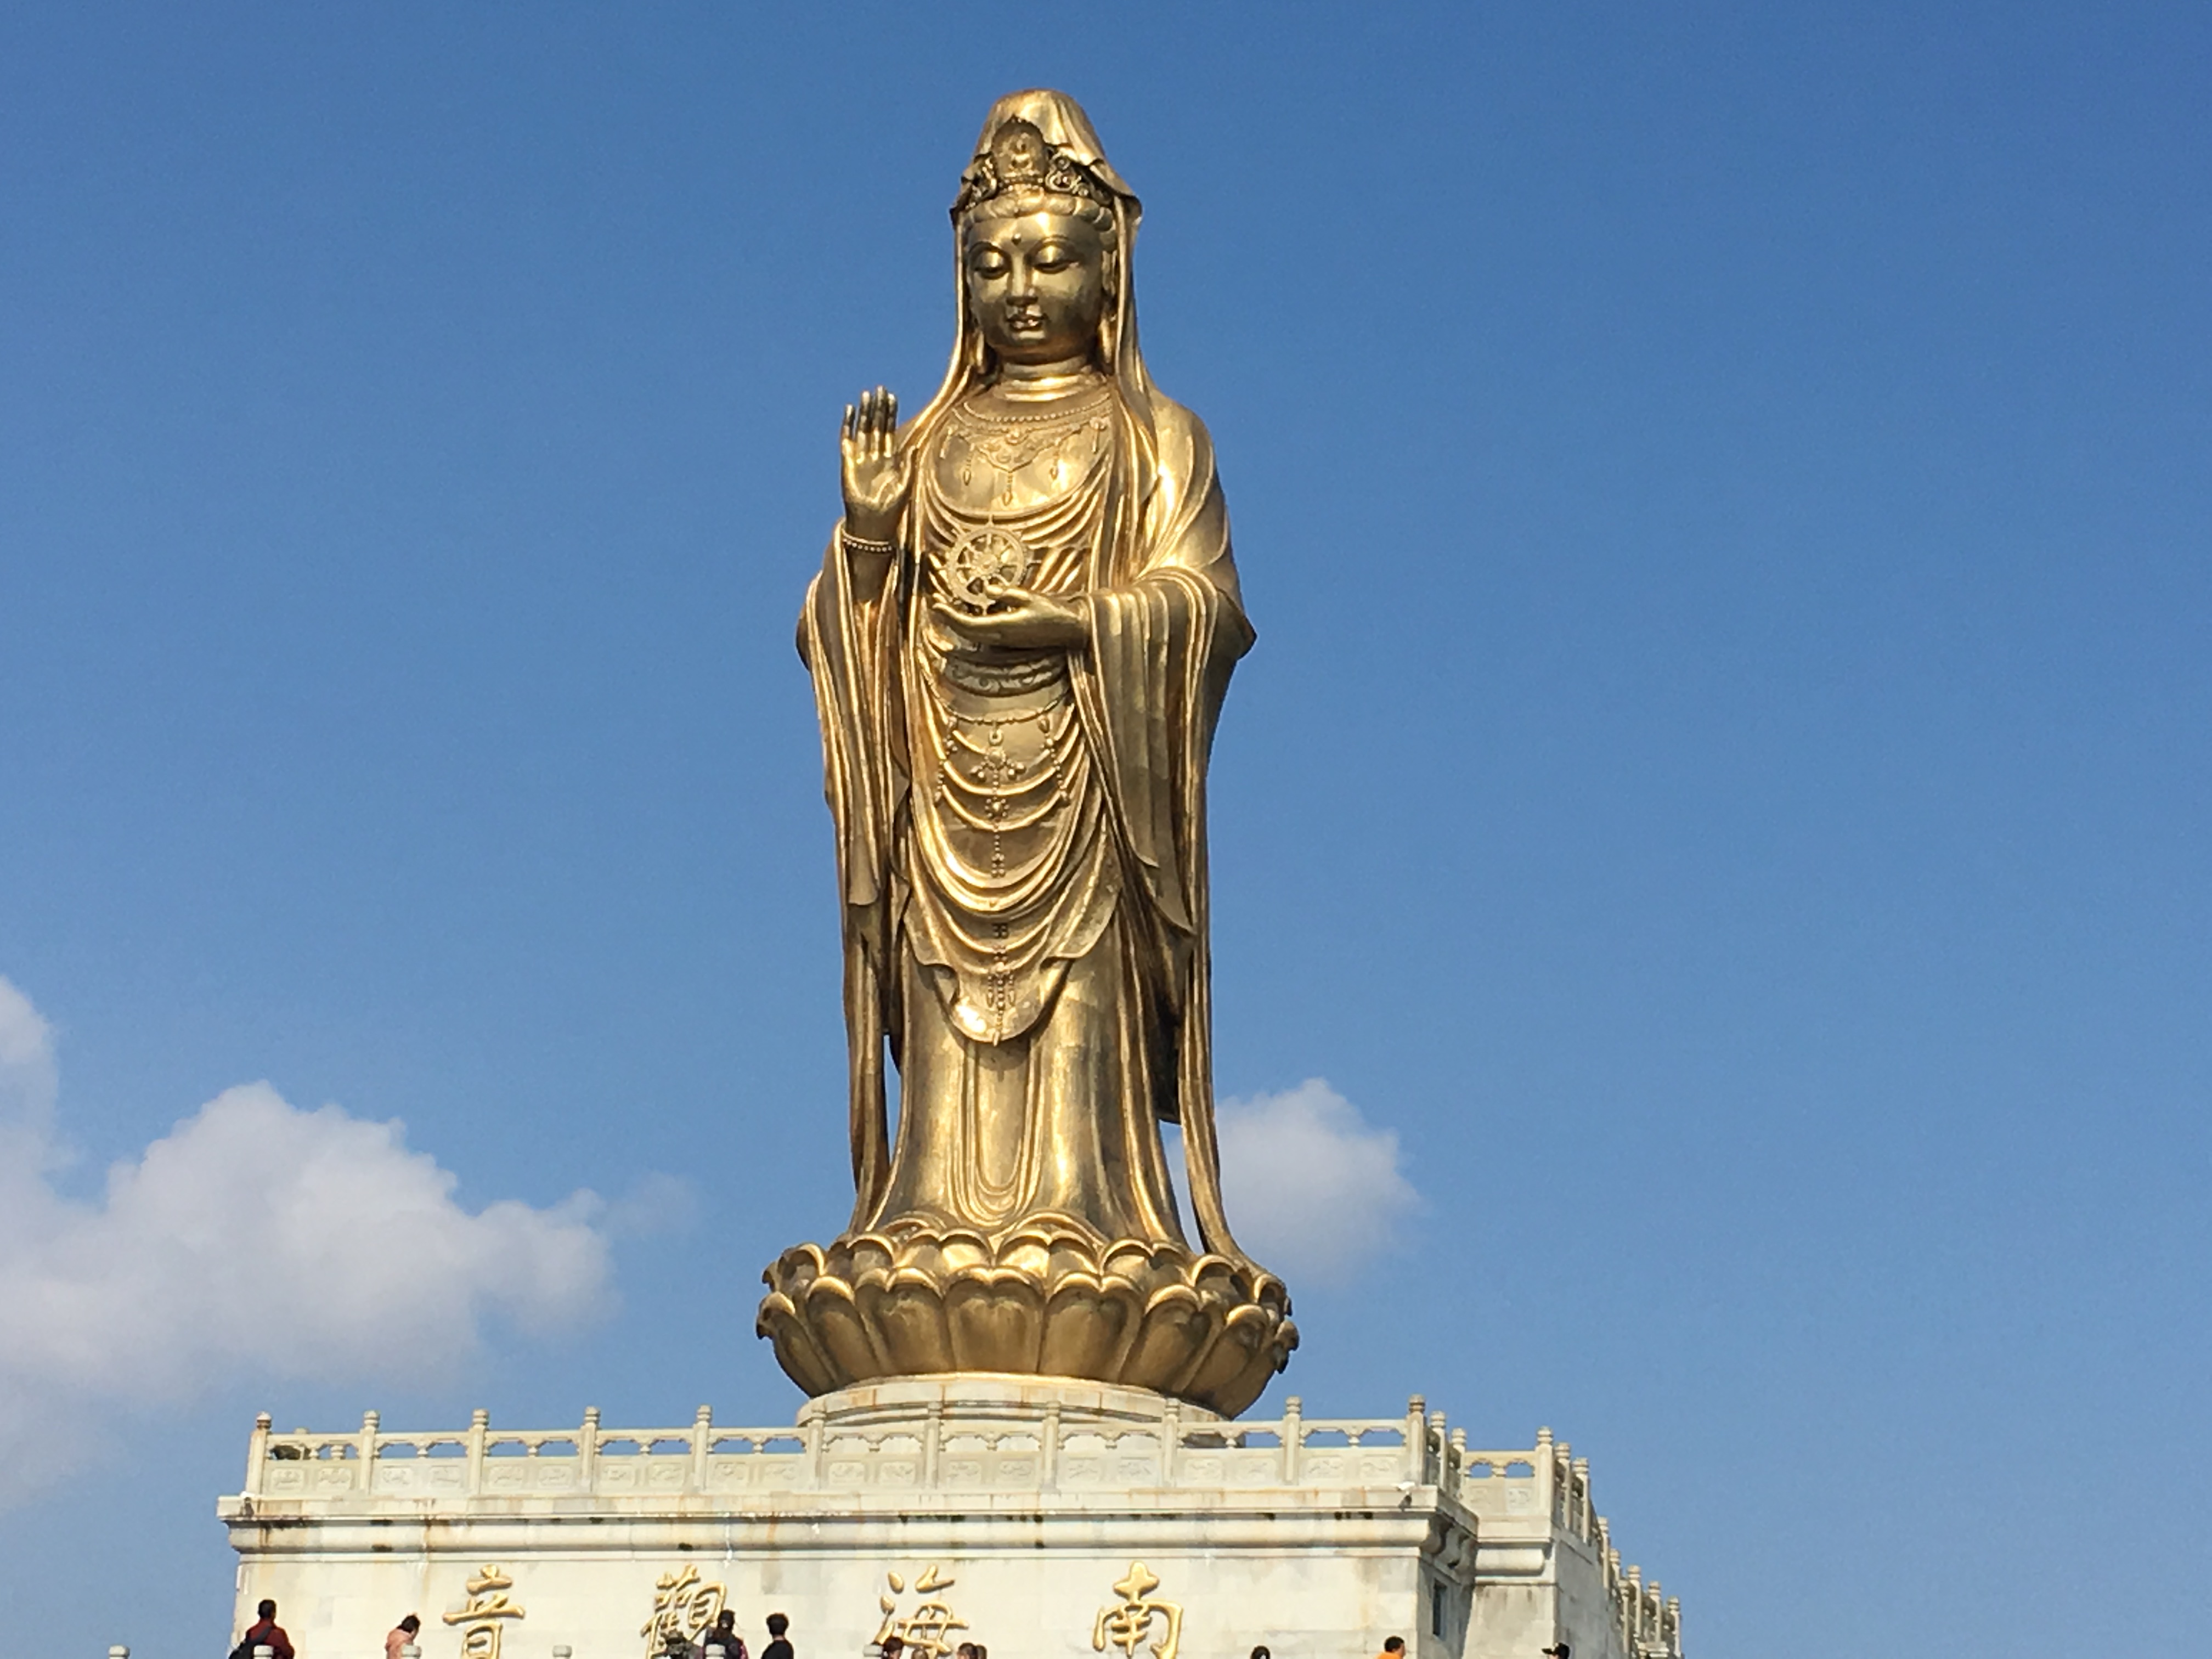 【携程攻略】舟山33米高南海观音景点,南海观音像是普陀山的标志,也是普陀山上最大的一尊佛像.给人震撼的感…